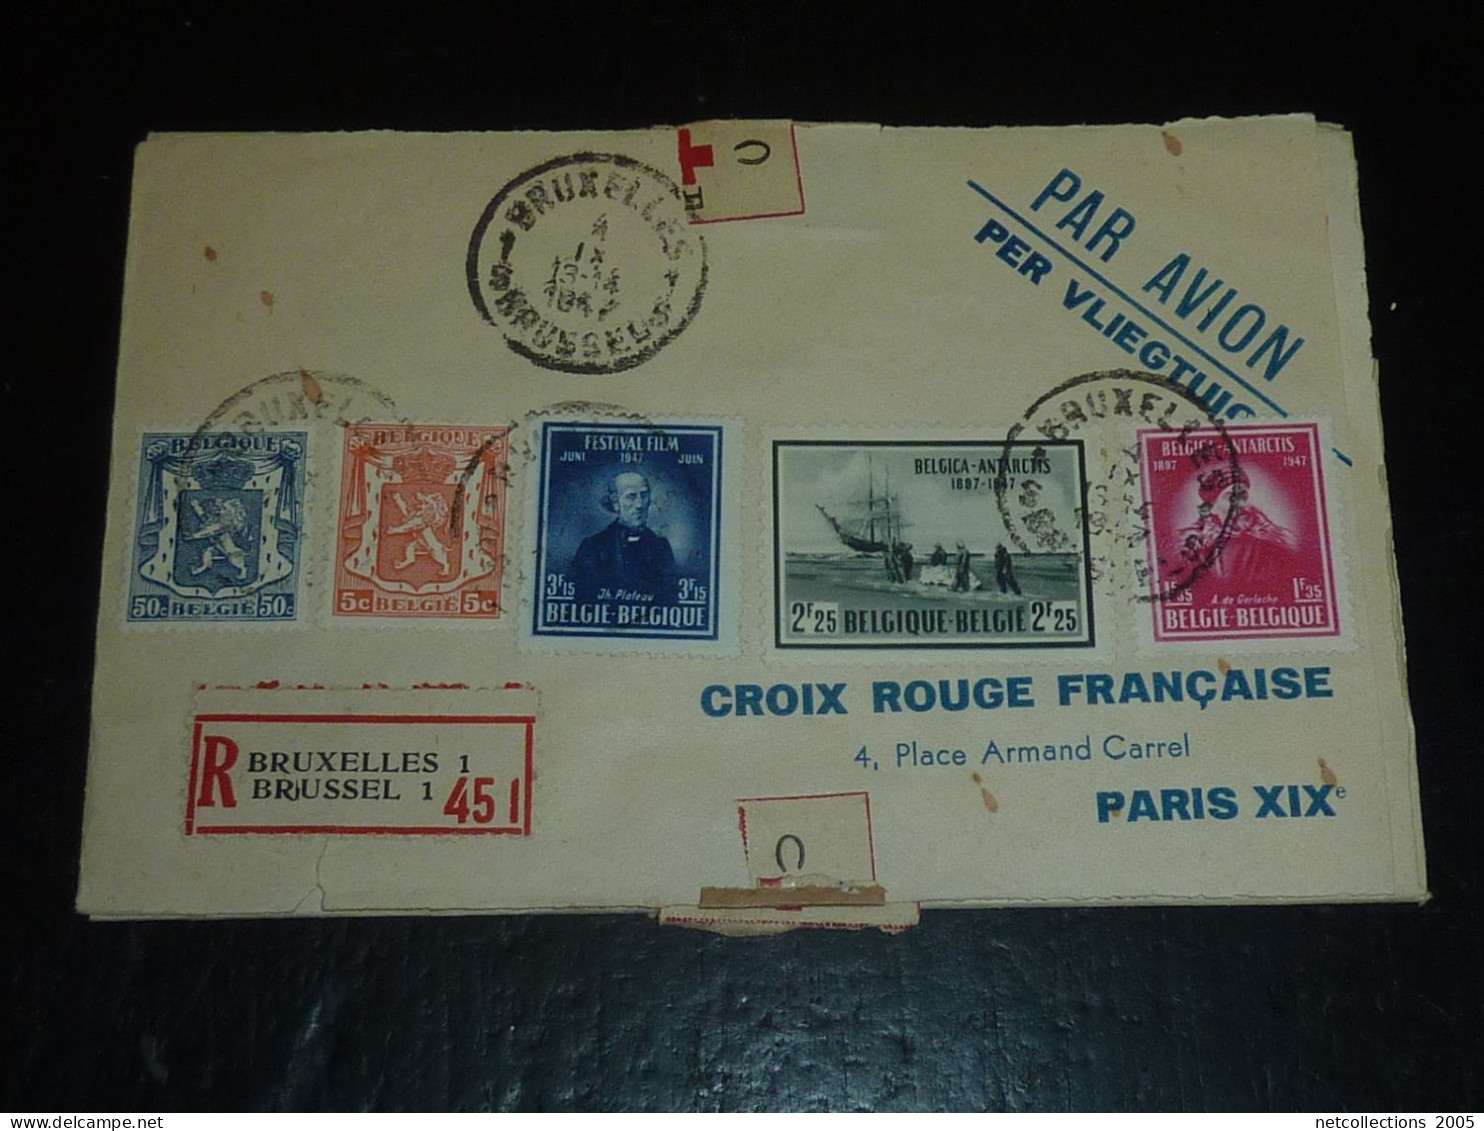 TOUR DU MONDE; CROIX ROUGE - PARIS NEW-YORK 18/11/1946 AU 21/11/1946 - NEW-YORK BRUXELLES - BRUXELLES PARIS ARRIVEE (CB)